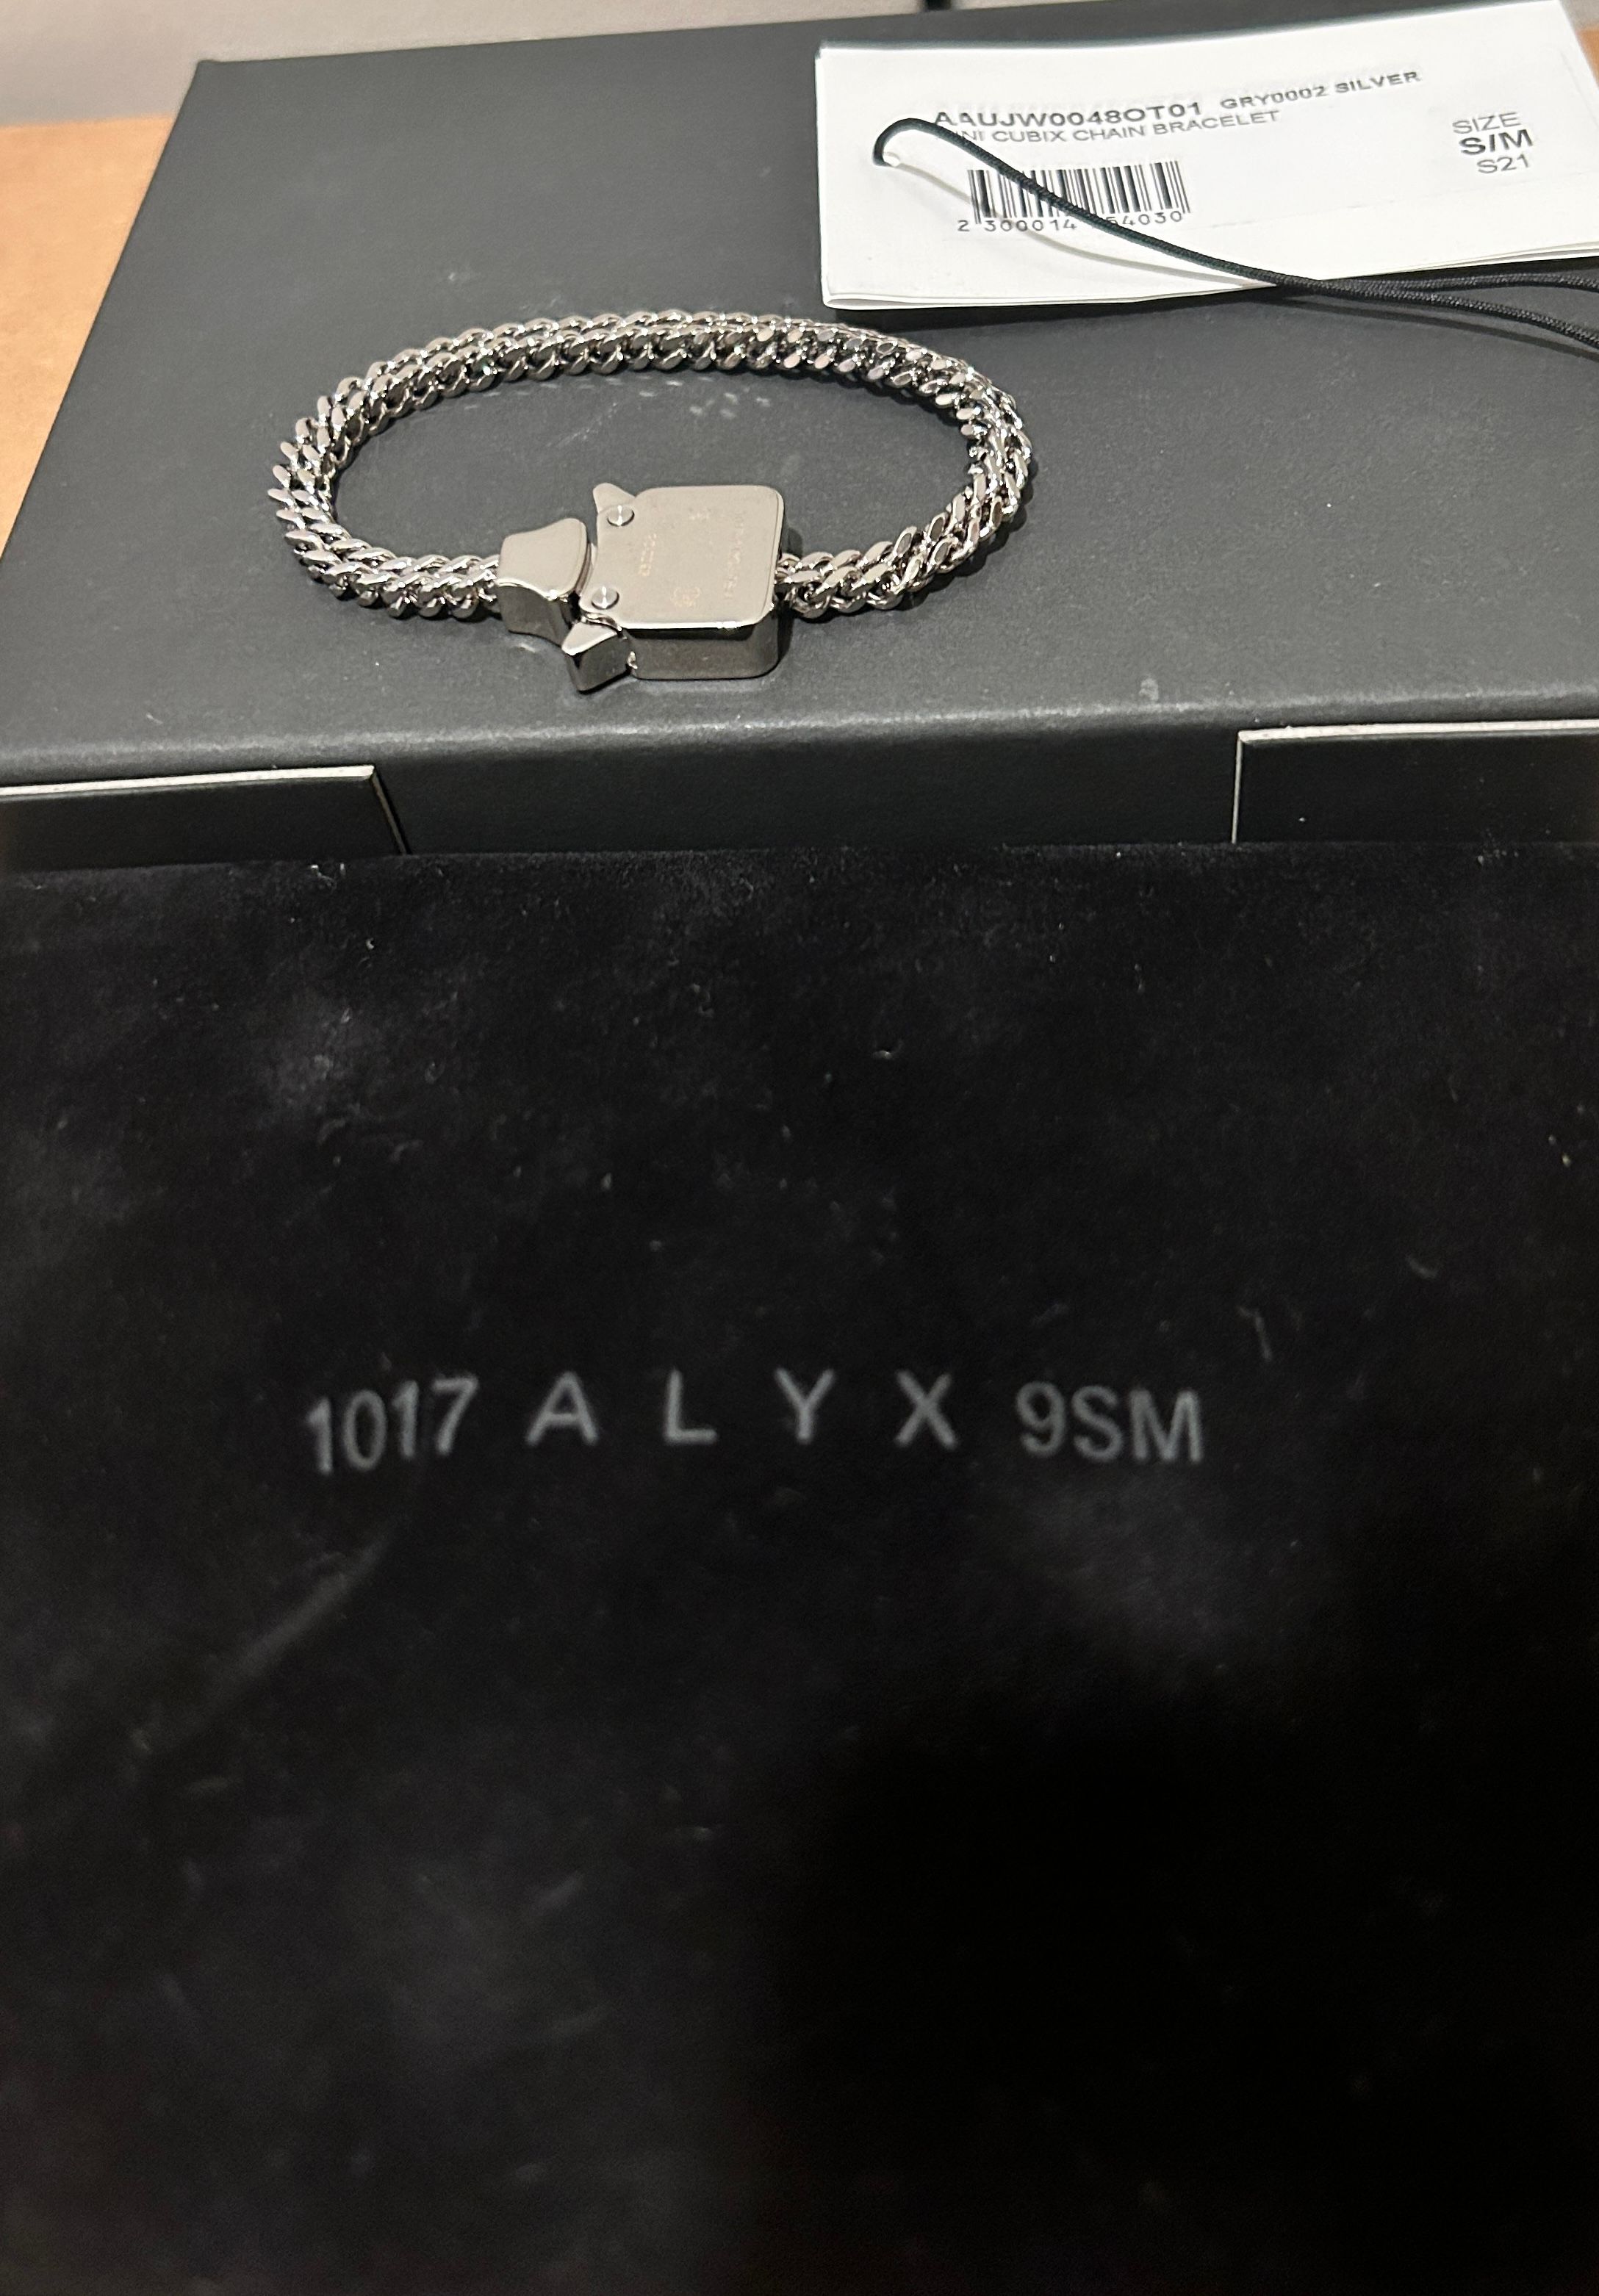 Pre-owned 1017 Alyx 9sm X Alyx 1017 Alyx 9sm × Alyx × Mmw Mini Cubix Chain Bracelet In Silver